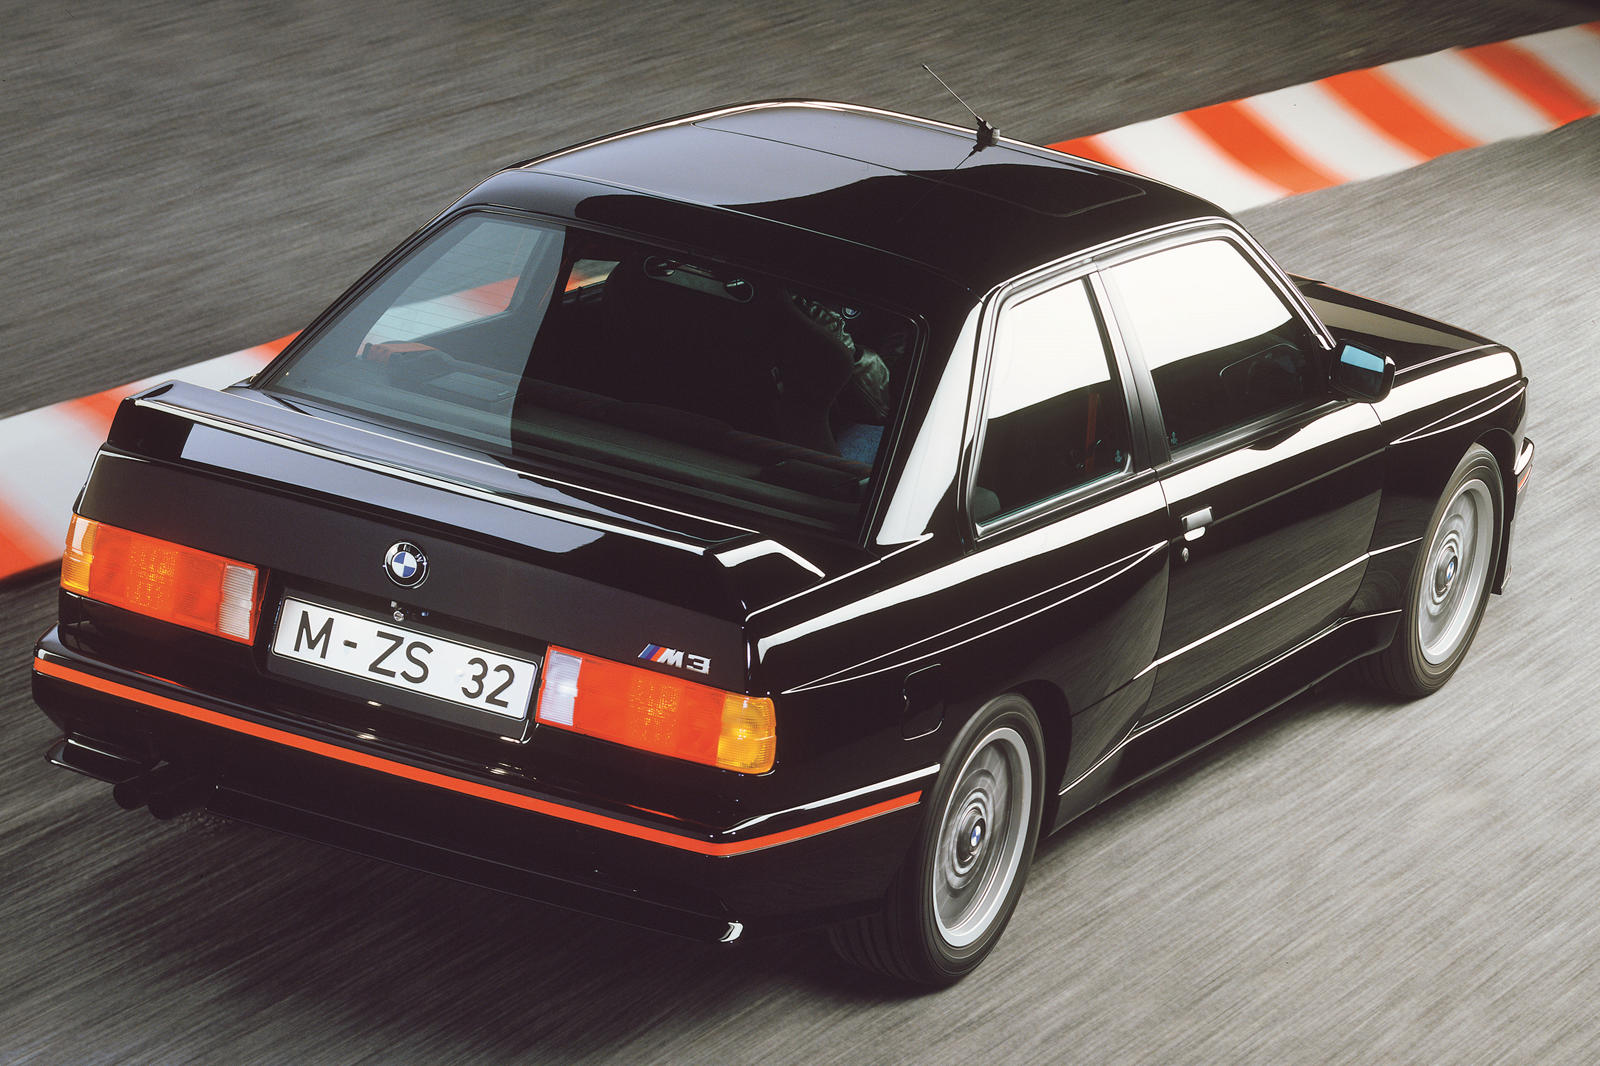 Первым было «Evo Sport», которое может стать отличным знаком для поклонников M3. E30 M3 исторически имел специальную модель под названием Sport Evo (сокращение от Sport Evolution), которая была одной из самых редких специальных версий M3, всего 600 е